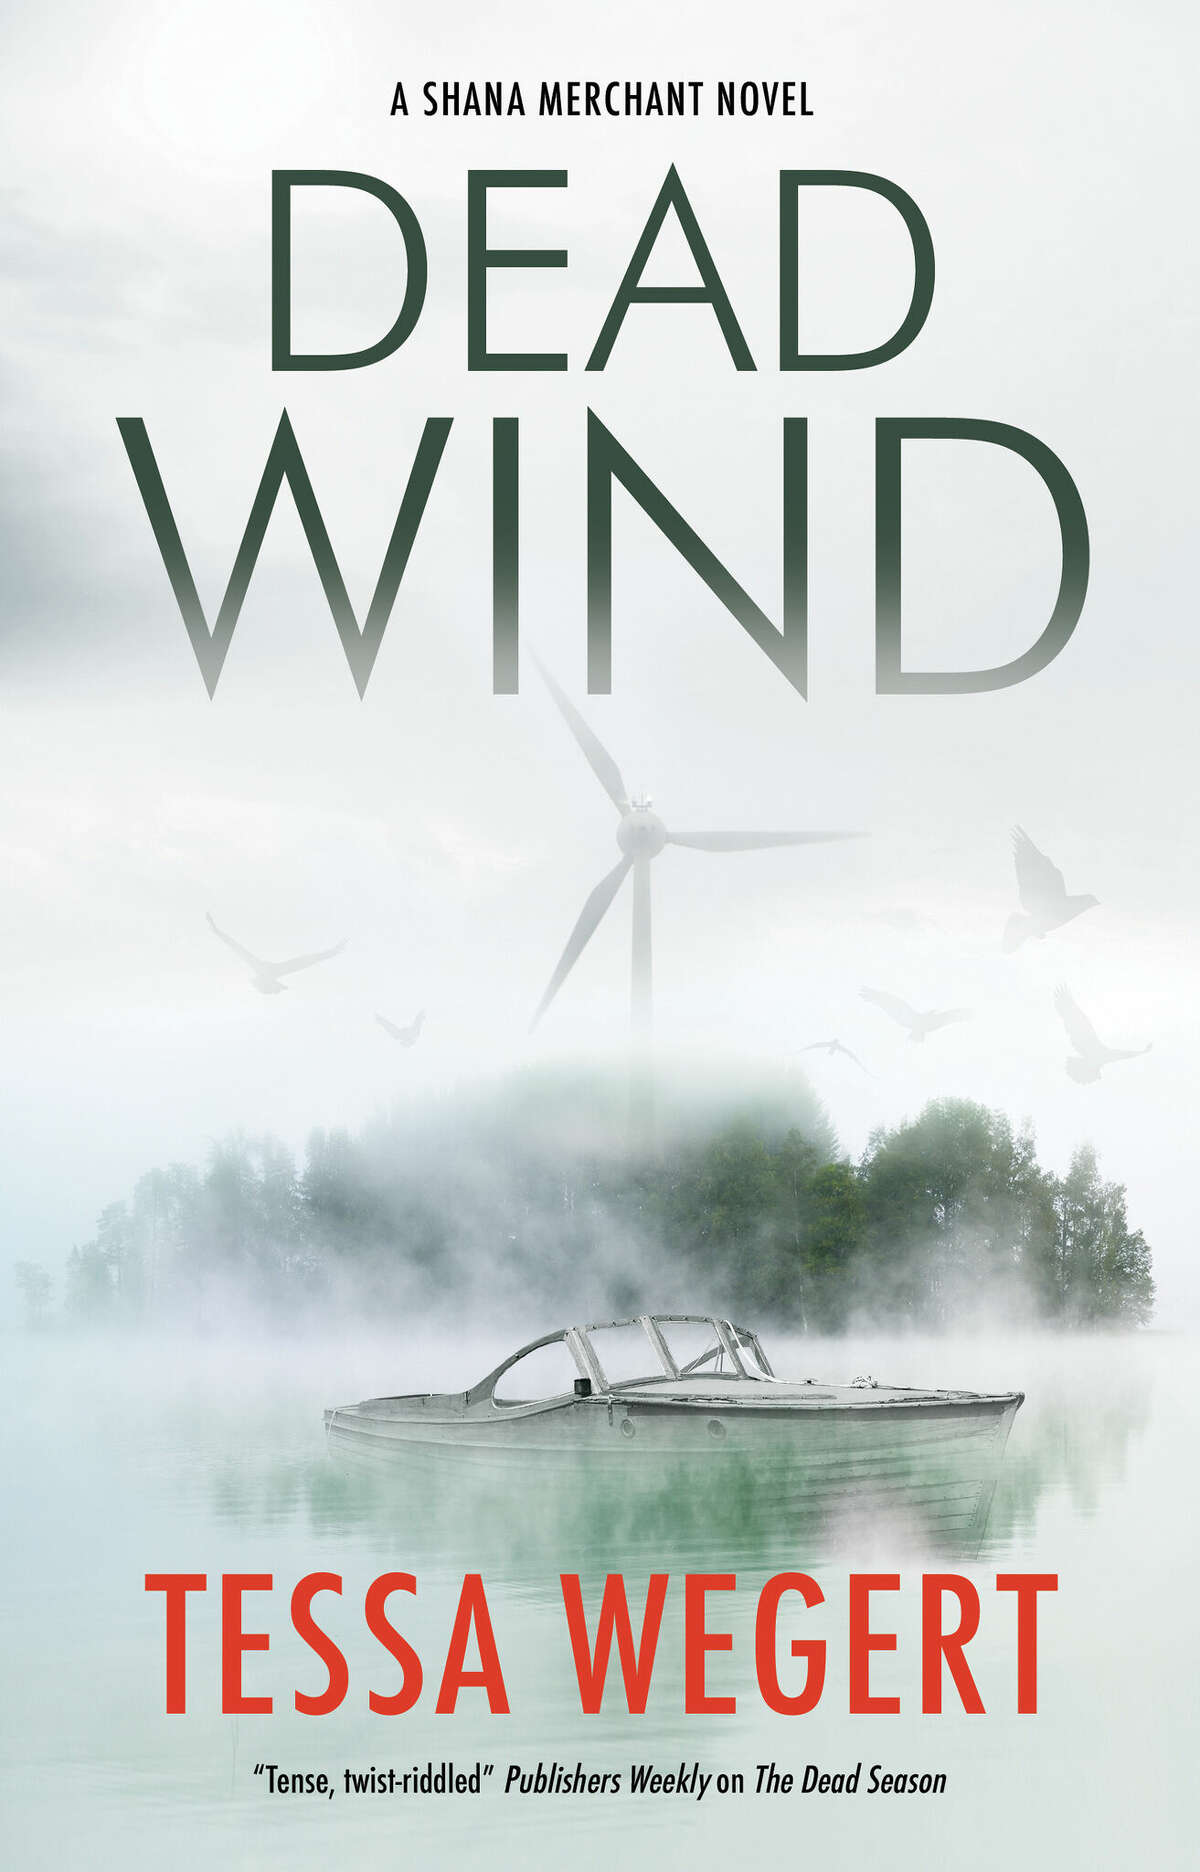 "Dead Wind" is the third book in the Shana Merchant series by Tessa Wegert.